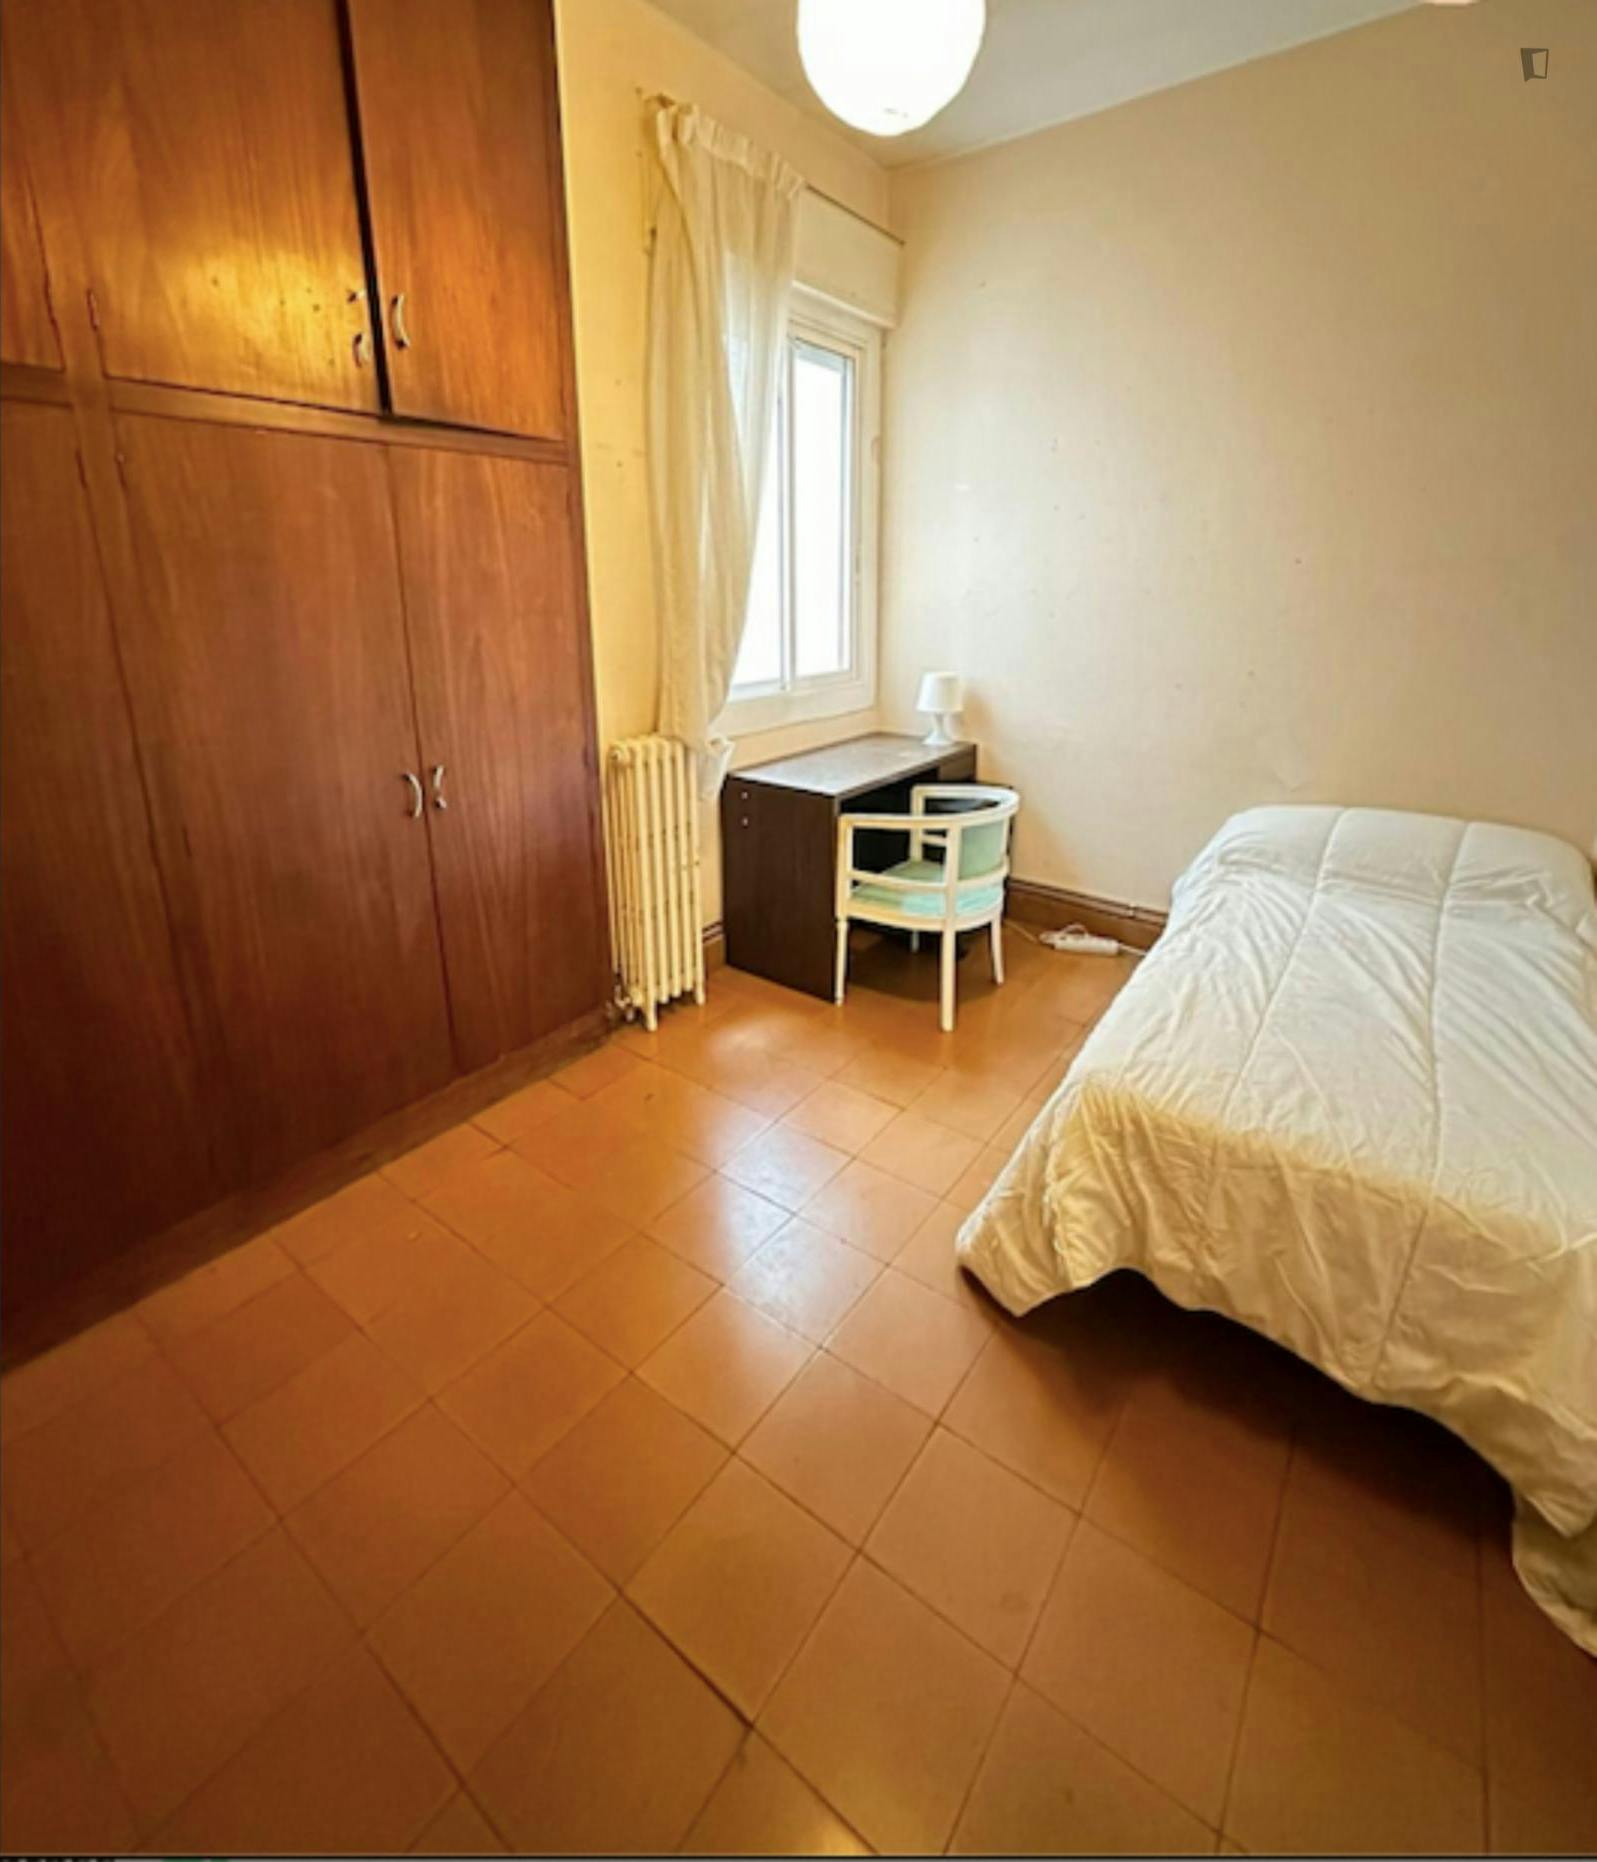 Homely single bedroom in Zaragoza next to Universidad de Zaragoza